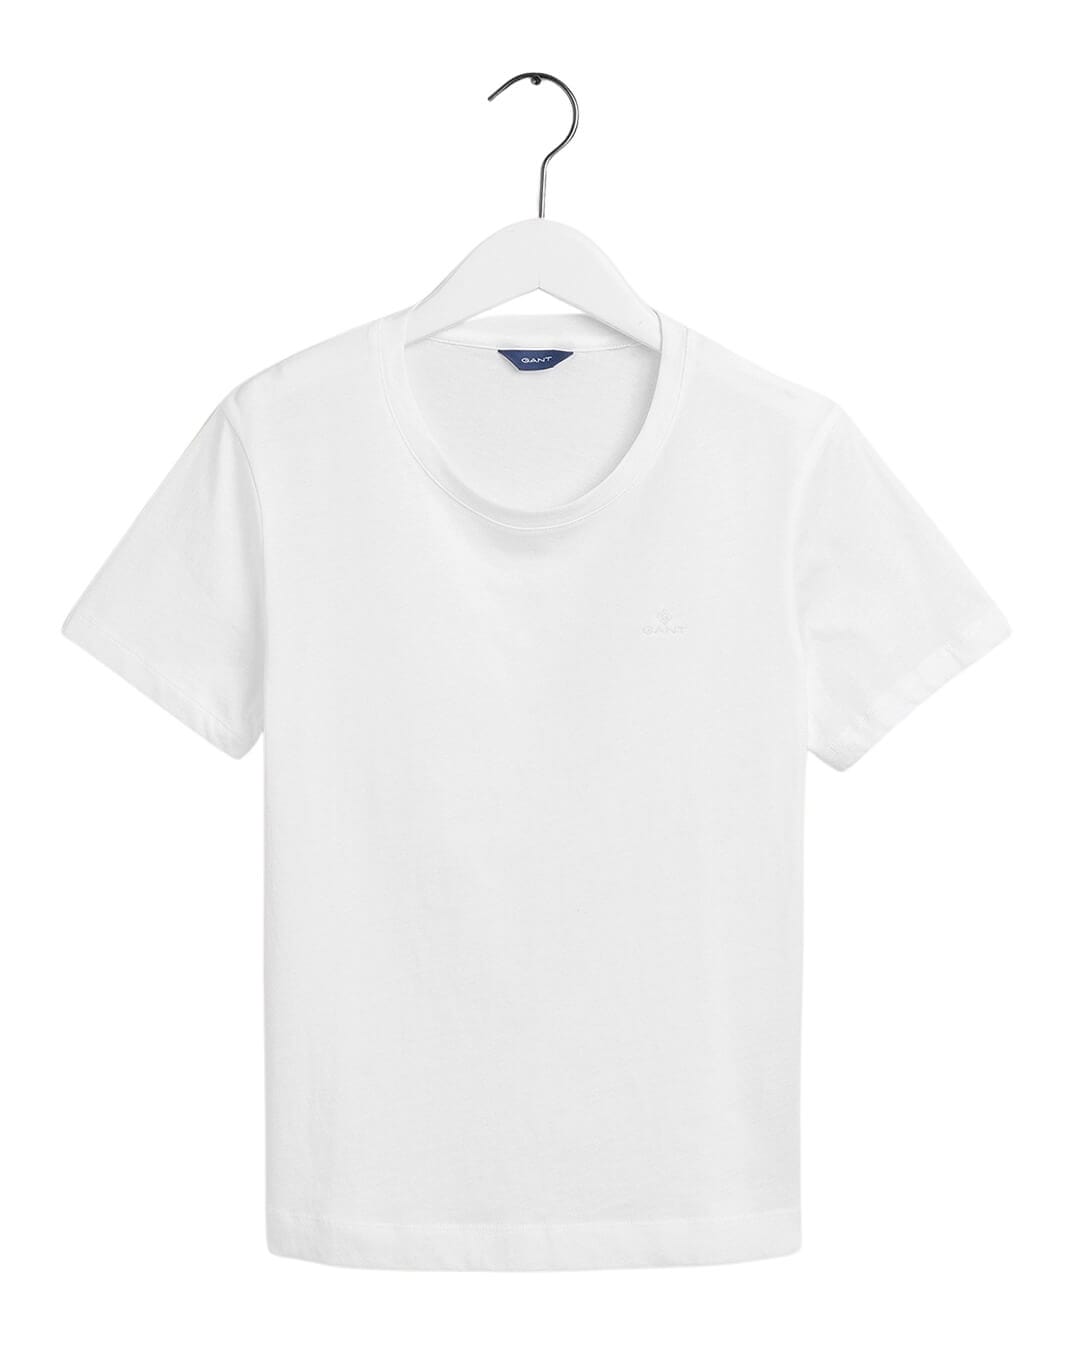 Gant T-Shirts Gant Original White T-Shirt